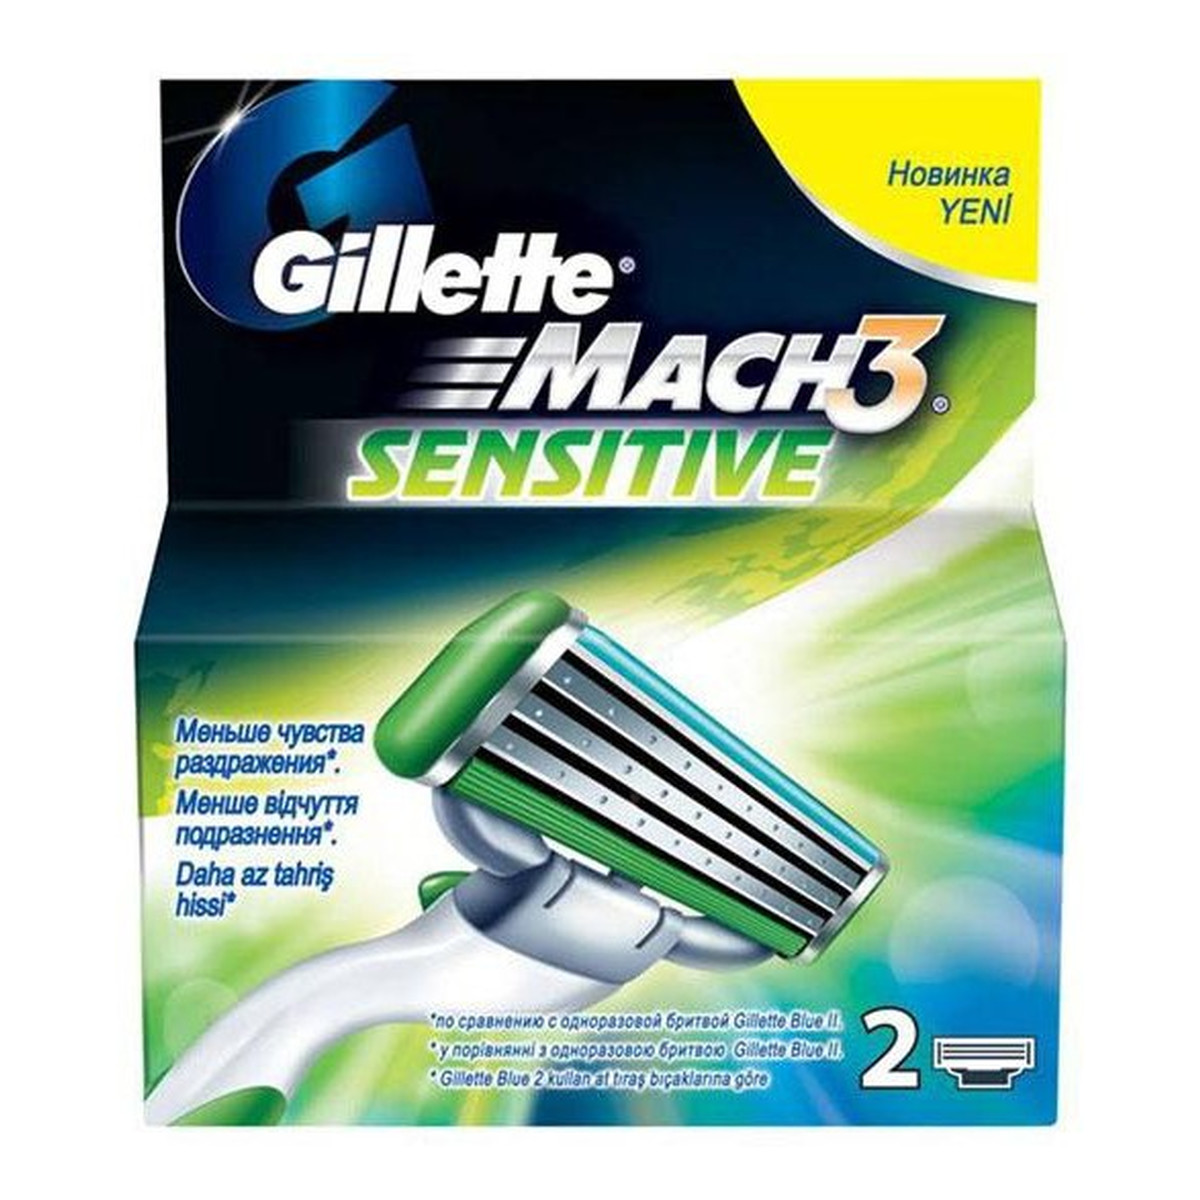 Gillette Sensitive Mach3 Wkłady Do Maszynki 2szt.